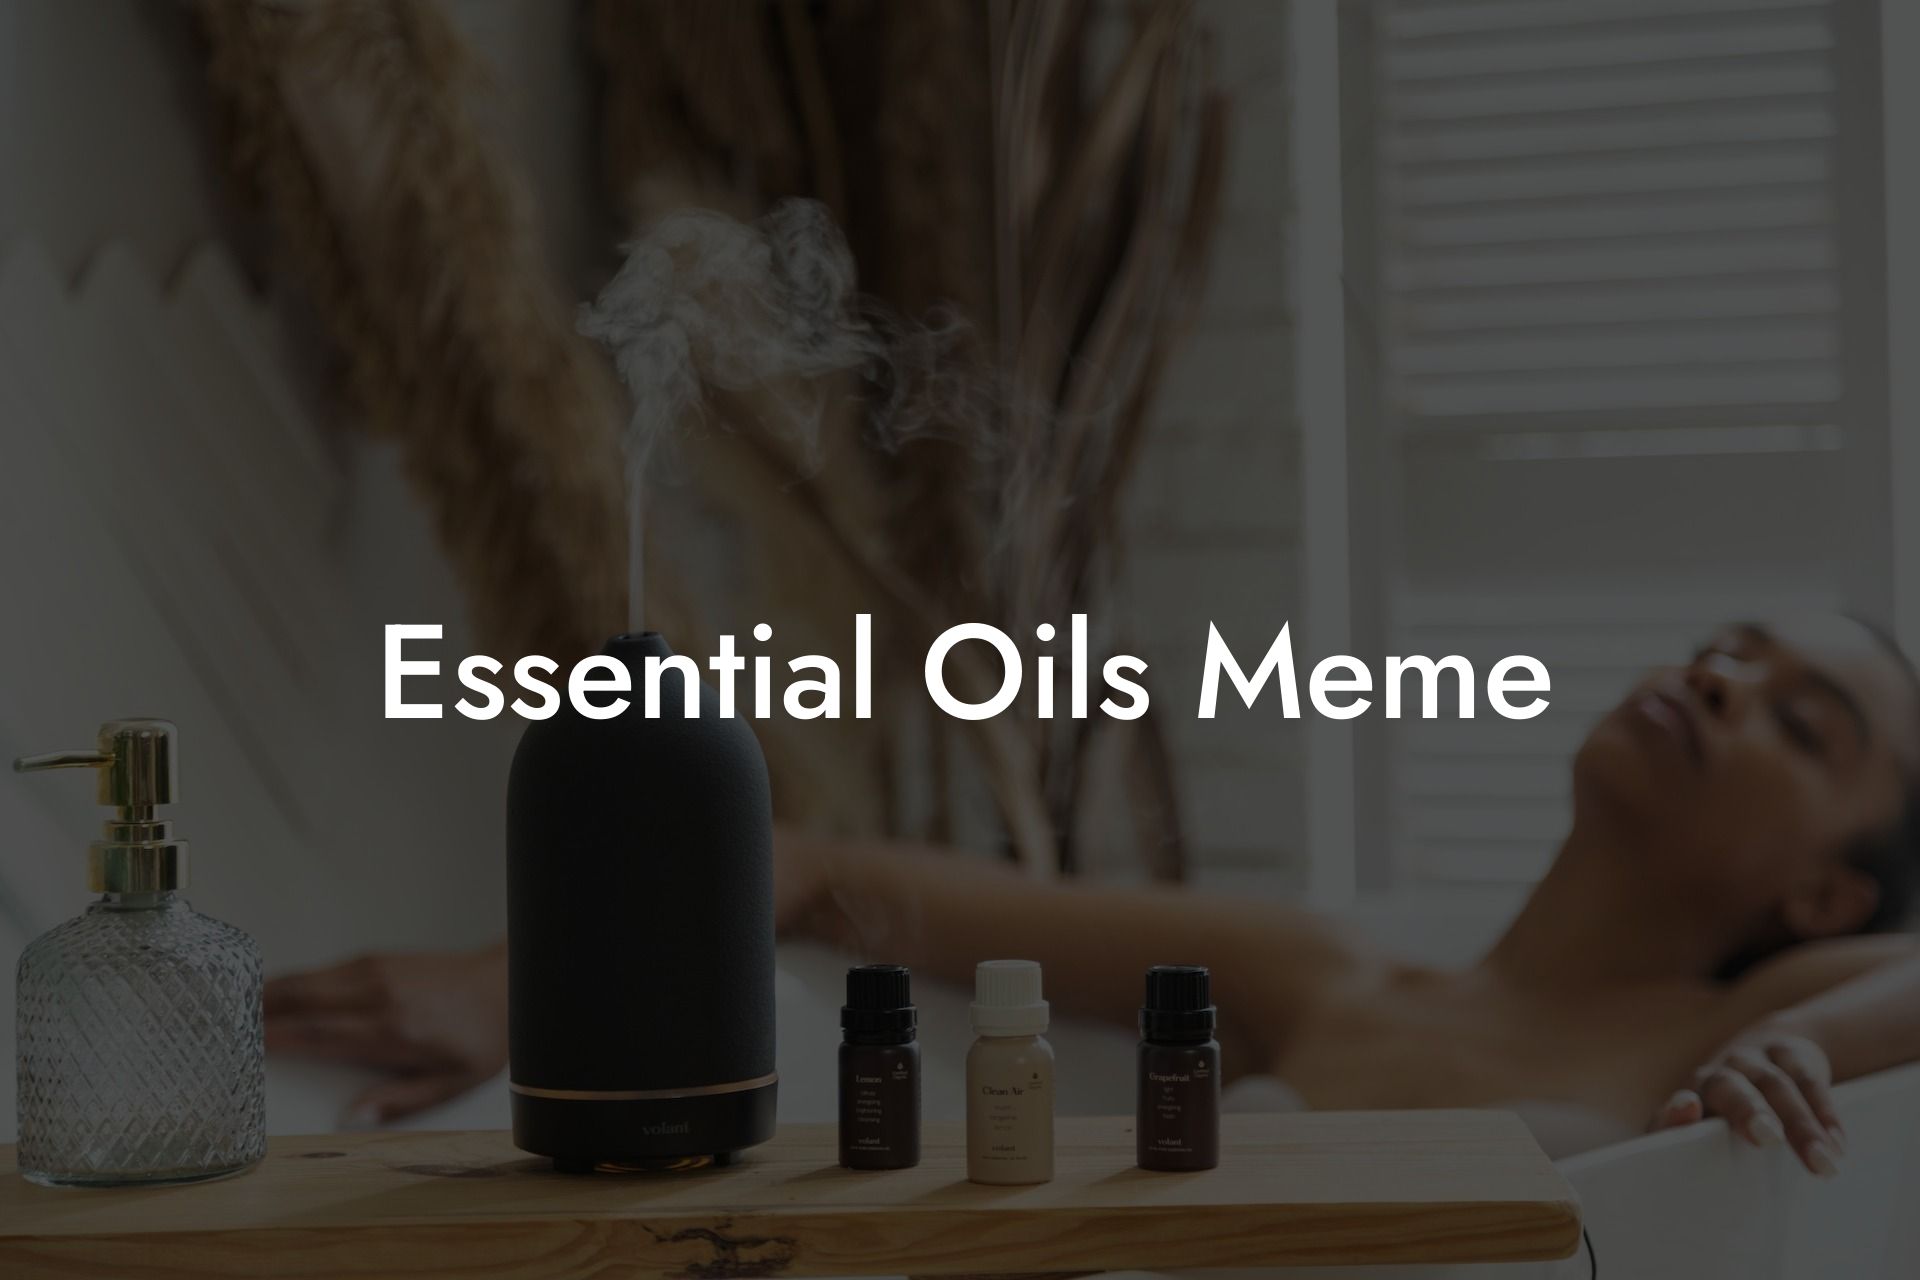 Essential Oils Meme